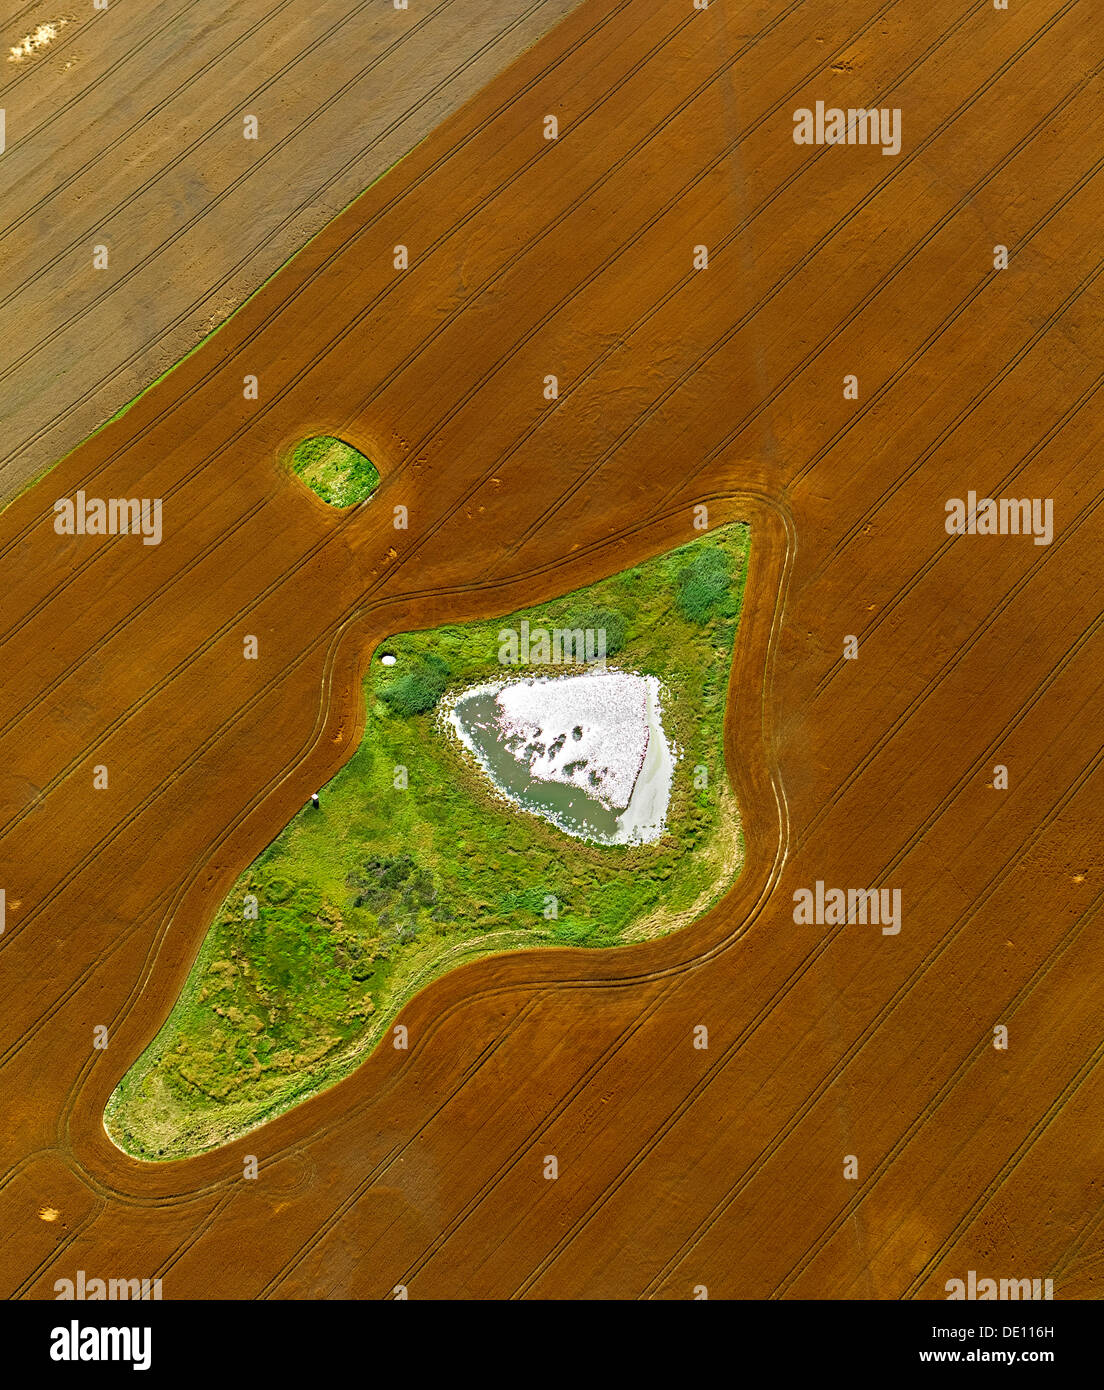 Vista aérea, campo cosechado con un estanque y pradera islas Foto de stock